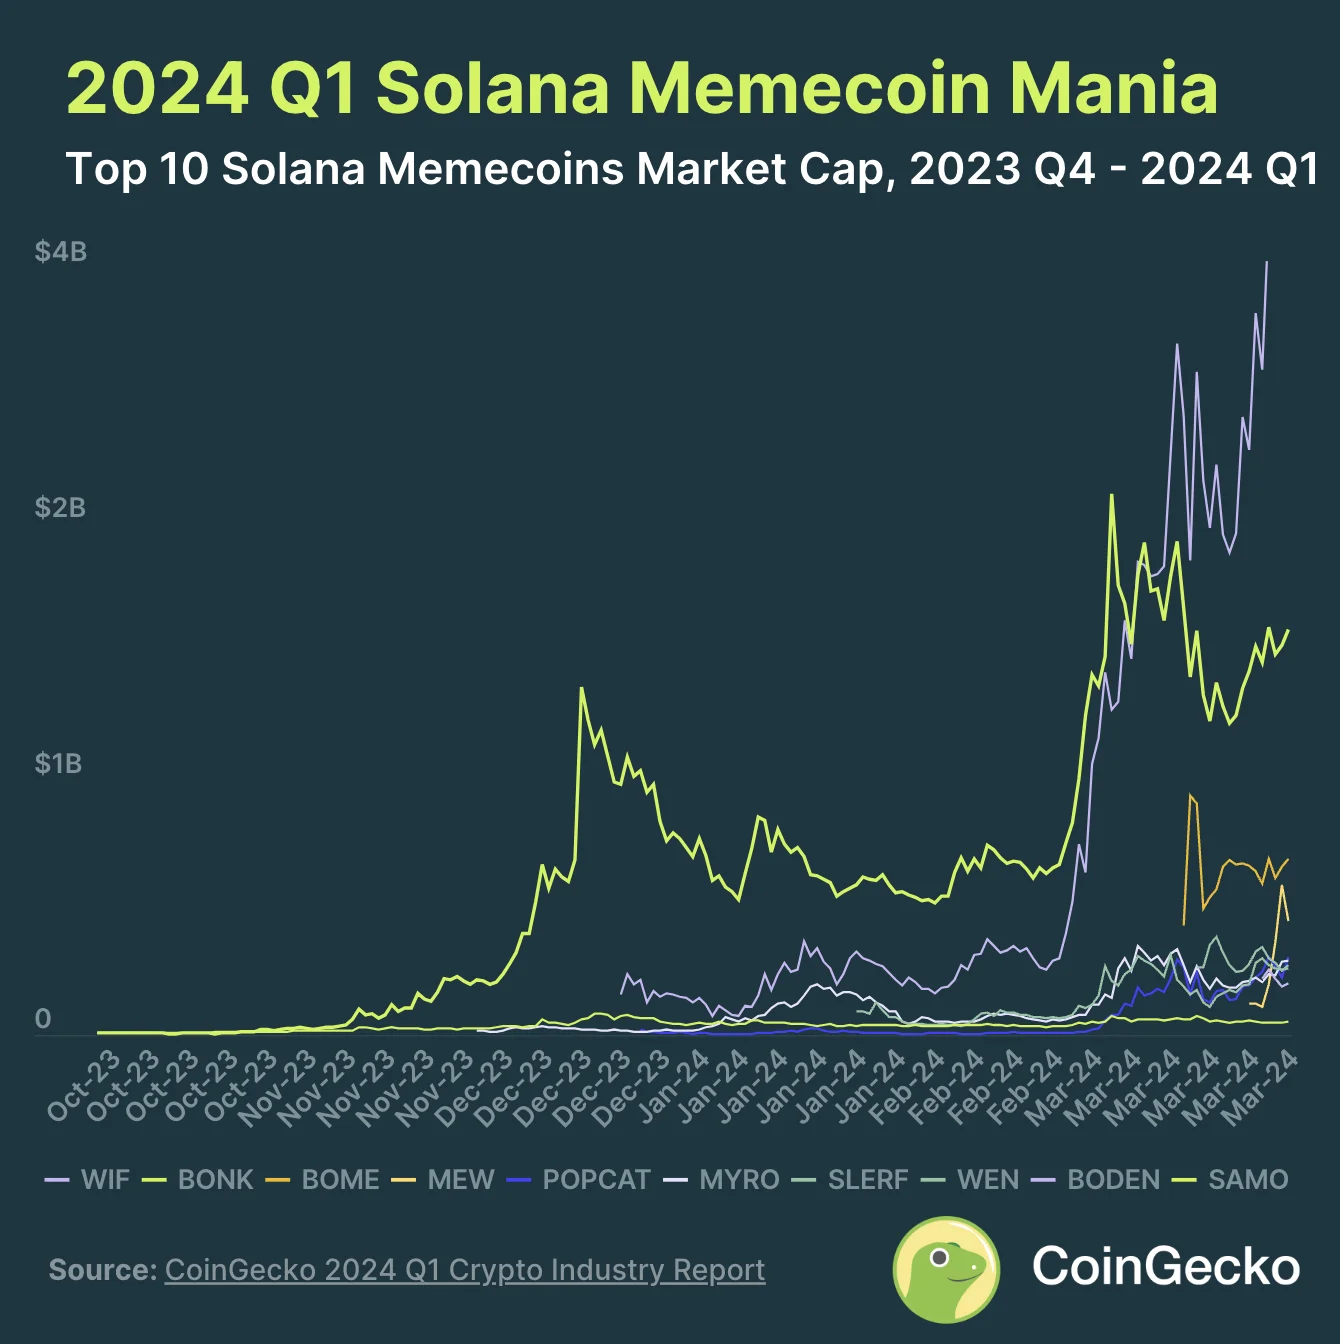 4. 基于 Solana 的 Meme 币市值达到 $8.32B